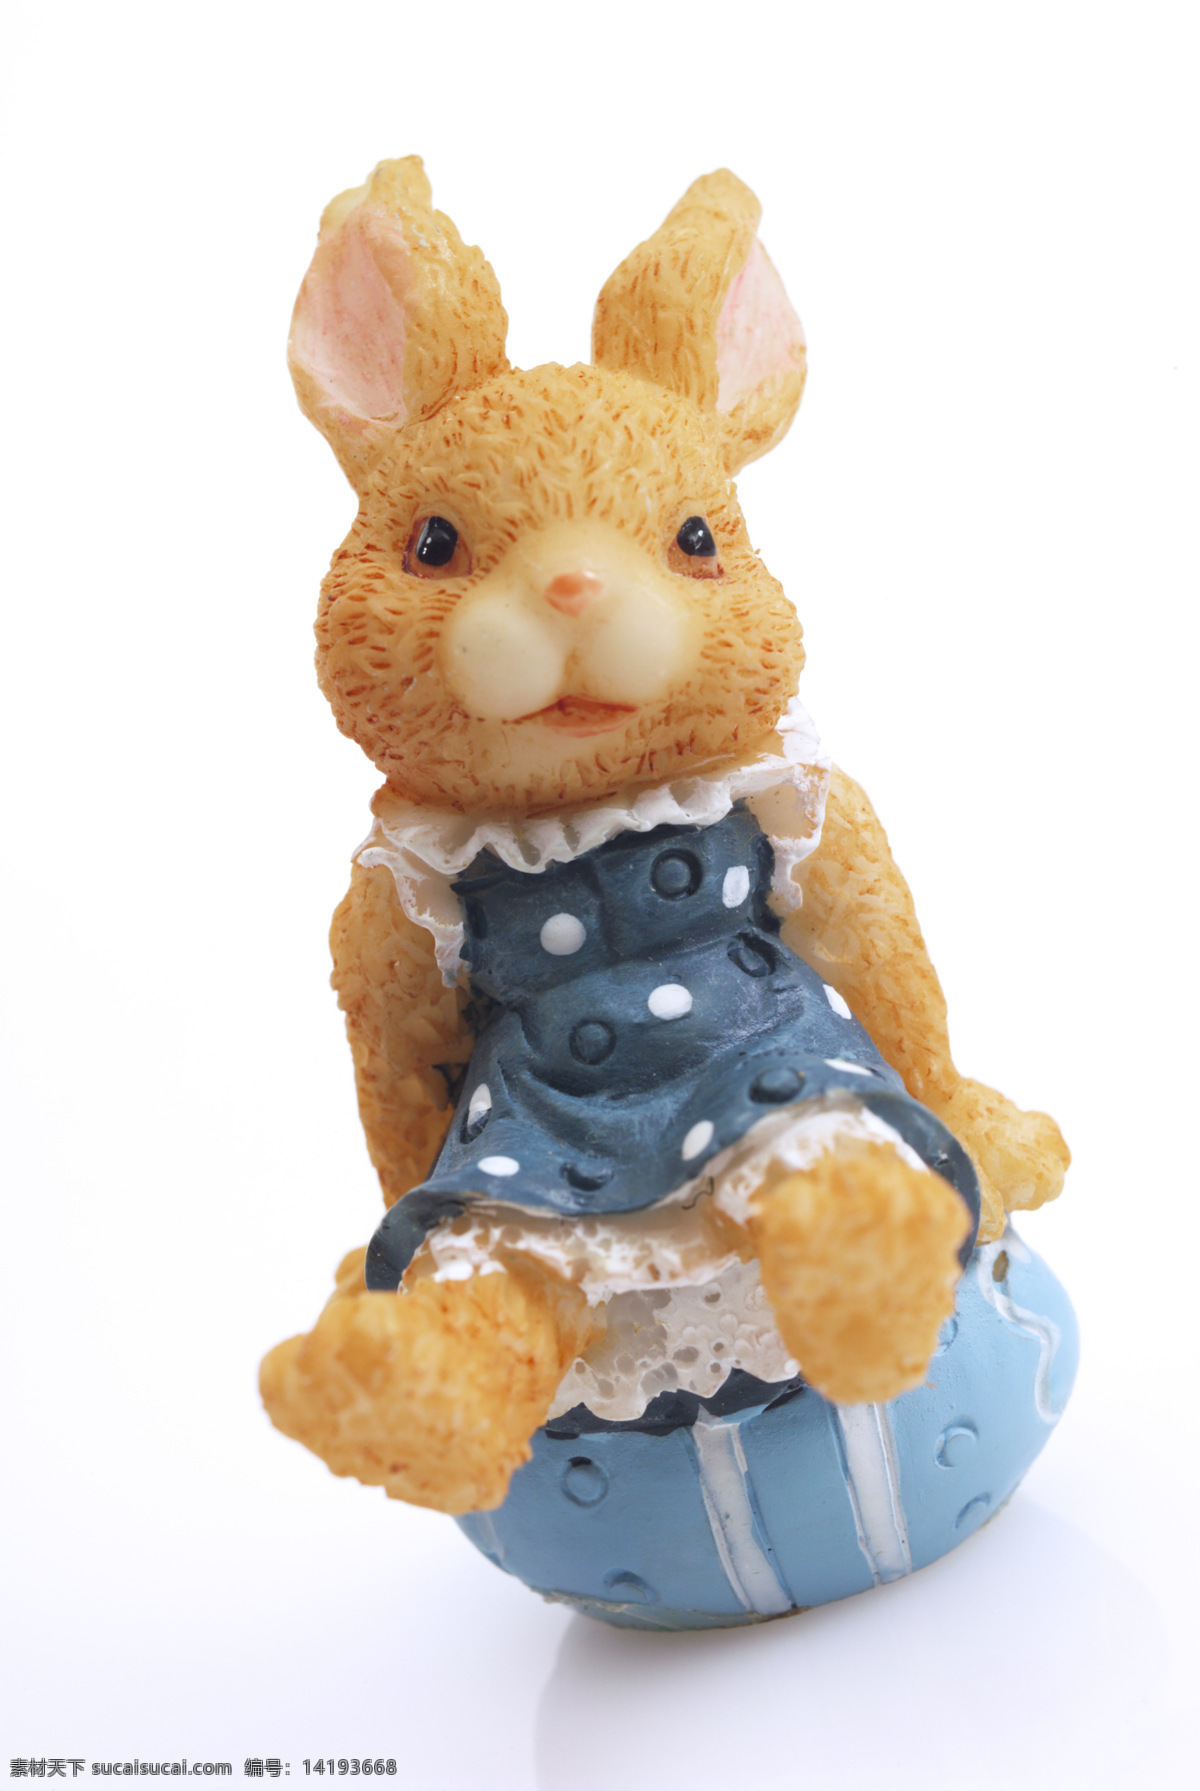 摆件 彩蛋 动物 可爱 生活百科 生活素材 兔子 玩具 兔 小动物 玩具兔 psd源文件